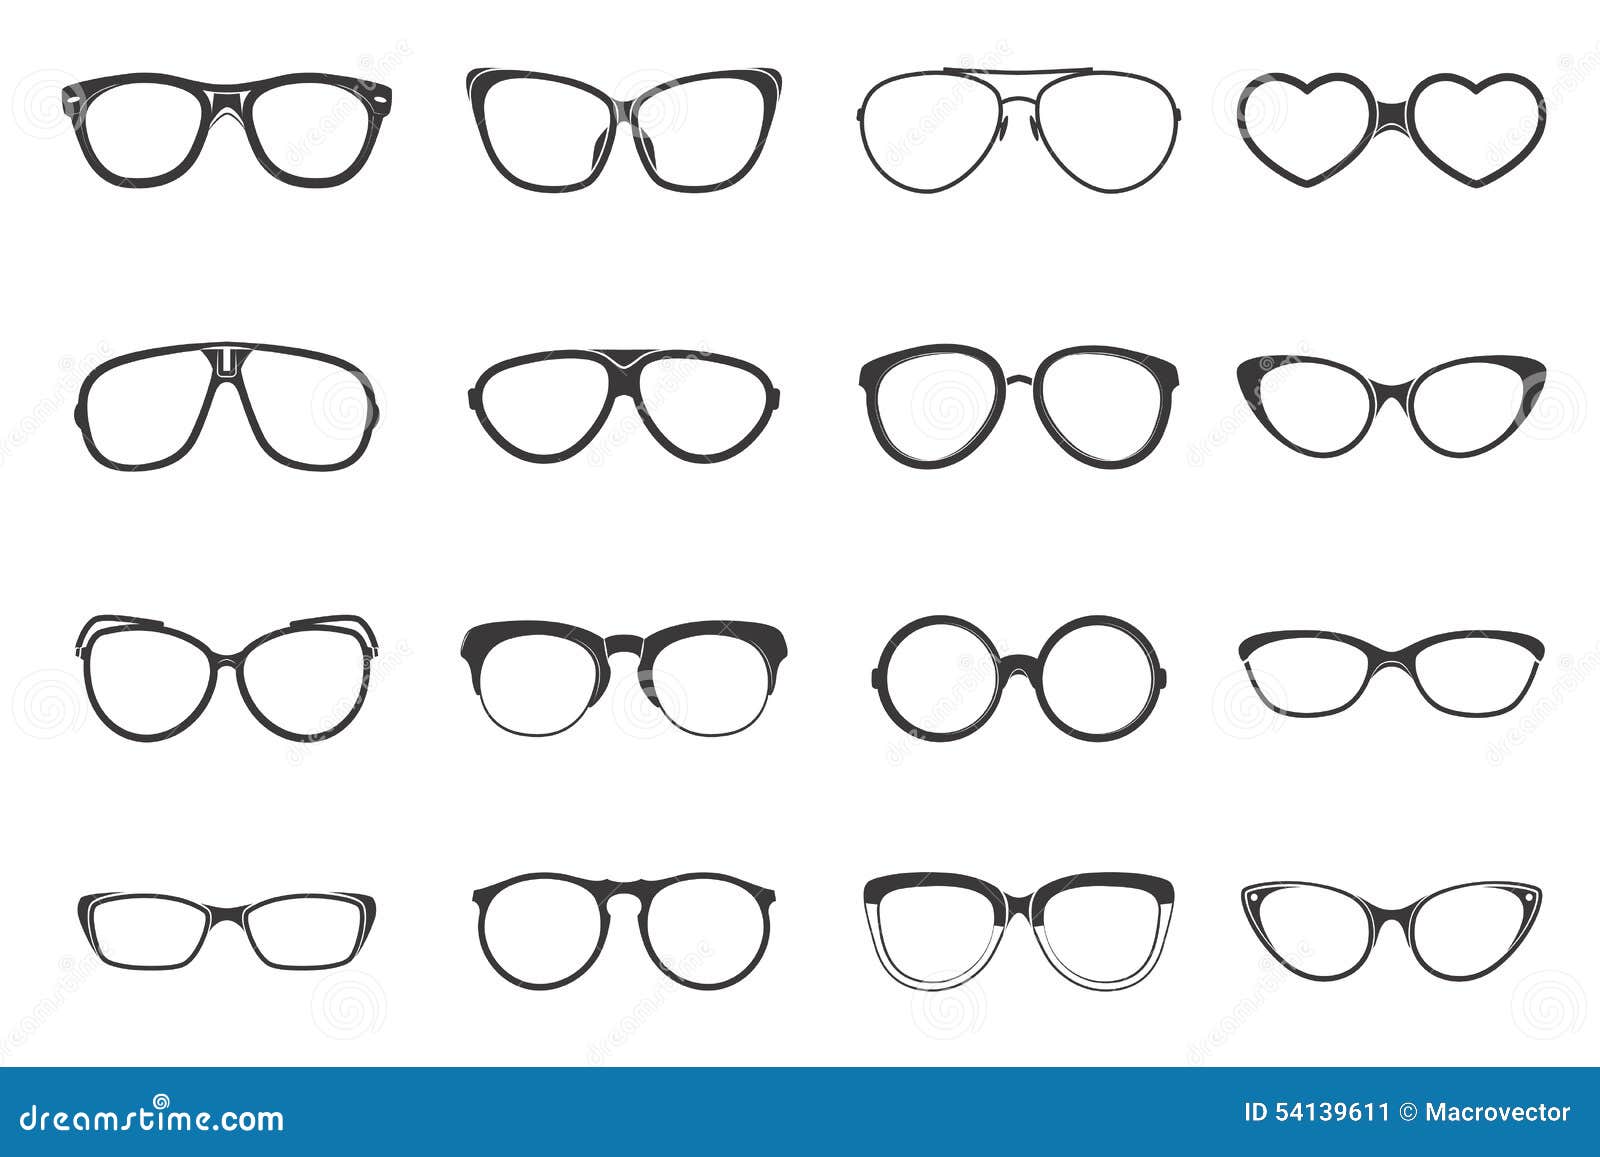 eyeglasses set flat